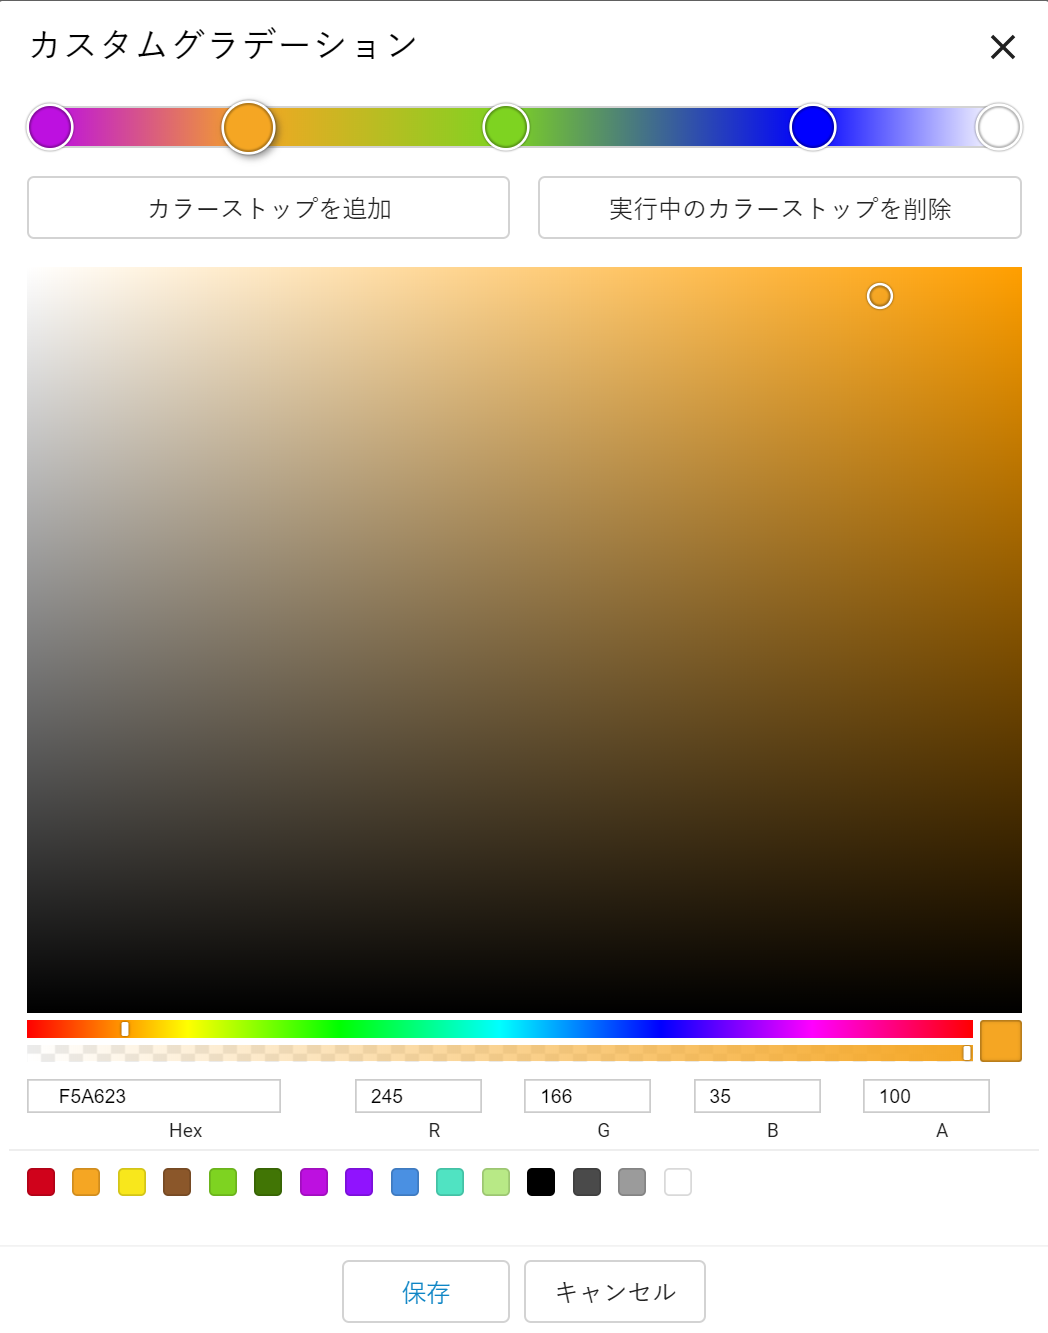 Dialog - Color Settings - Custom Gradient